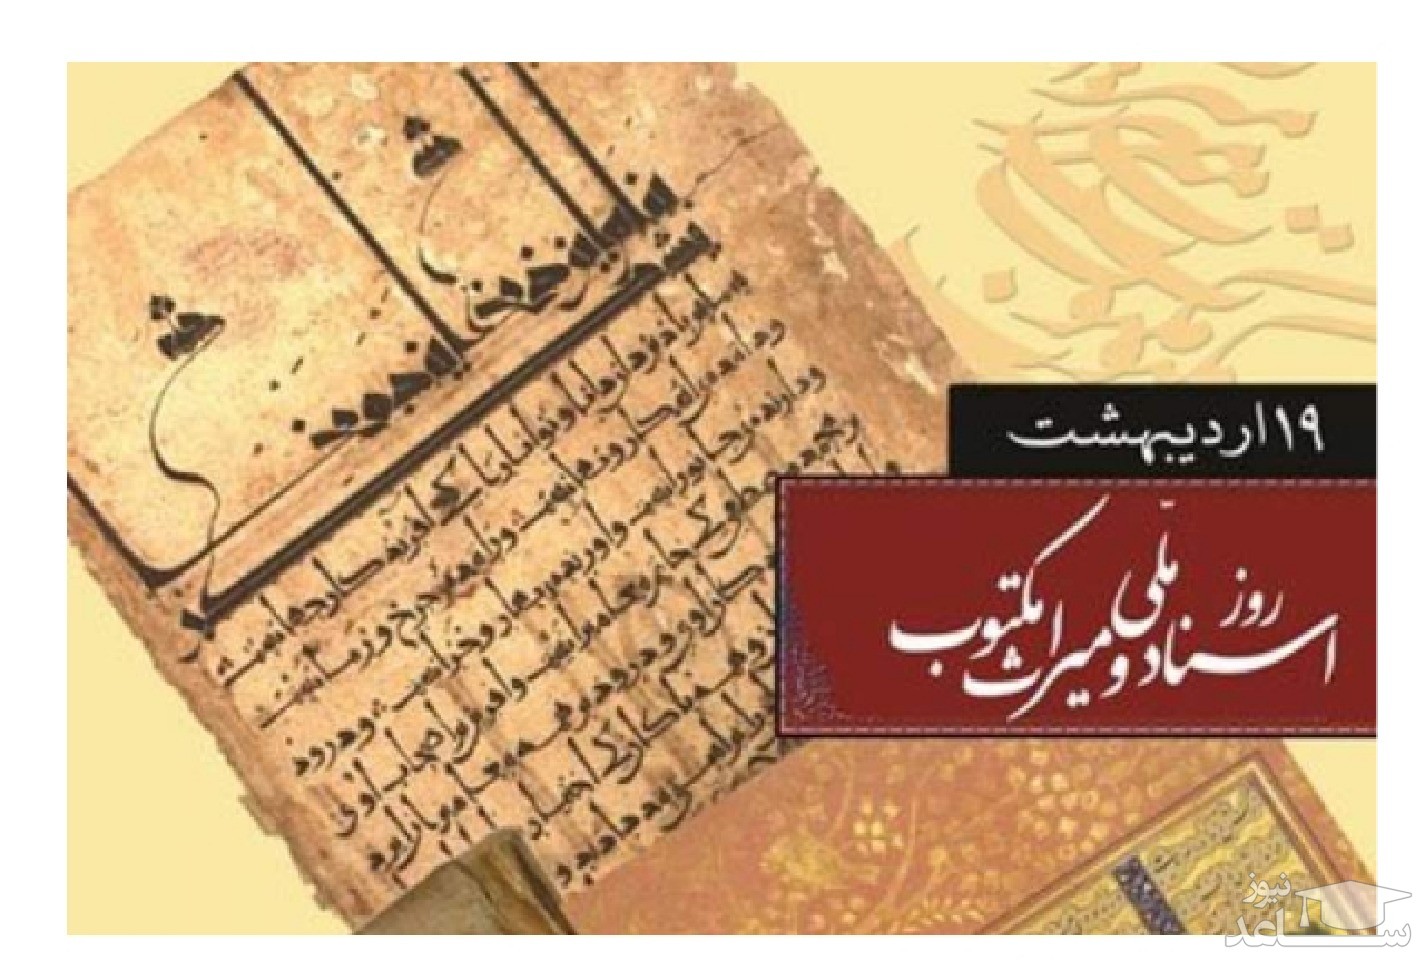 ادبی ترین متن های تبریک به مناسبت روز اسناد ملی و میراث مکتوب